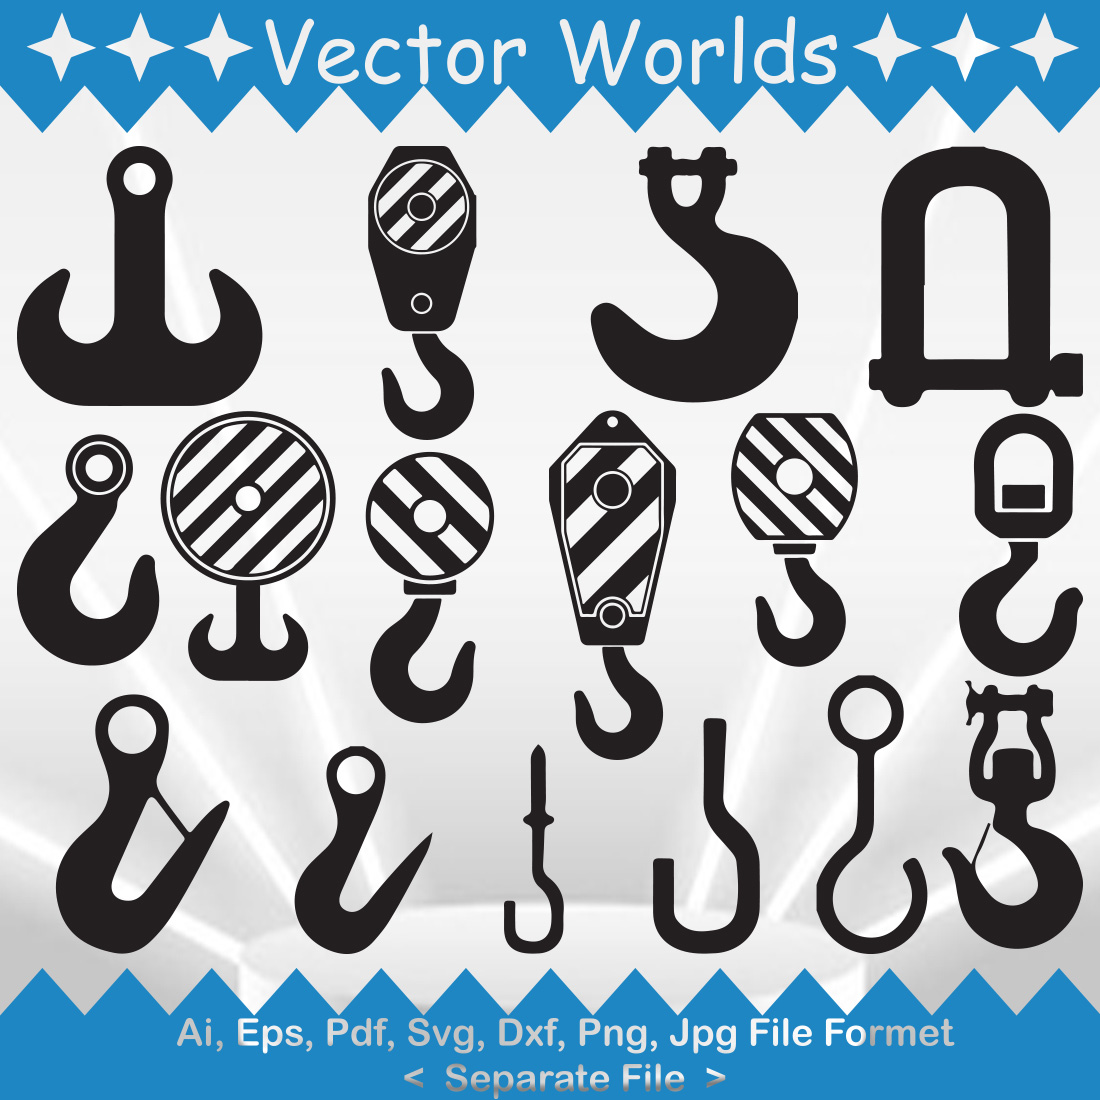 Hook Crane SVG Vector Design cover image.